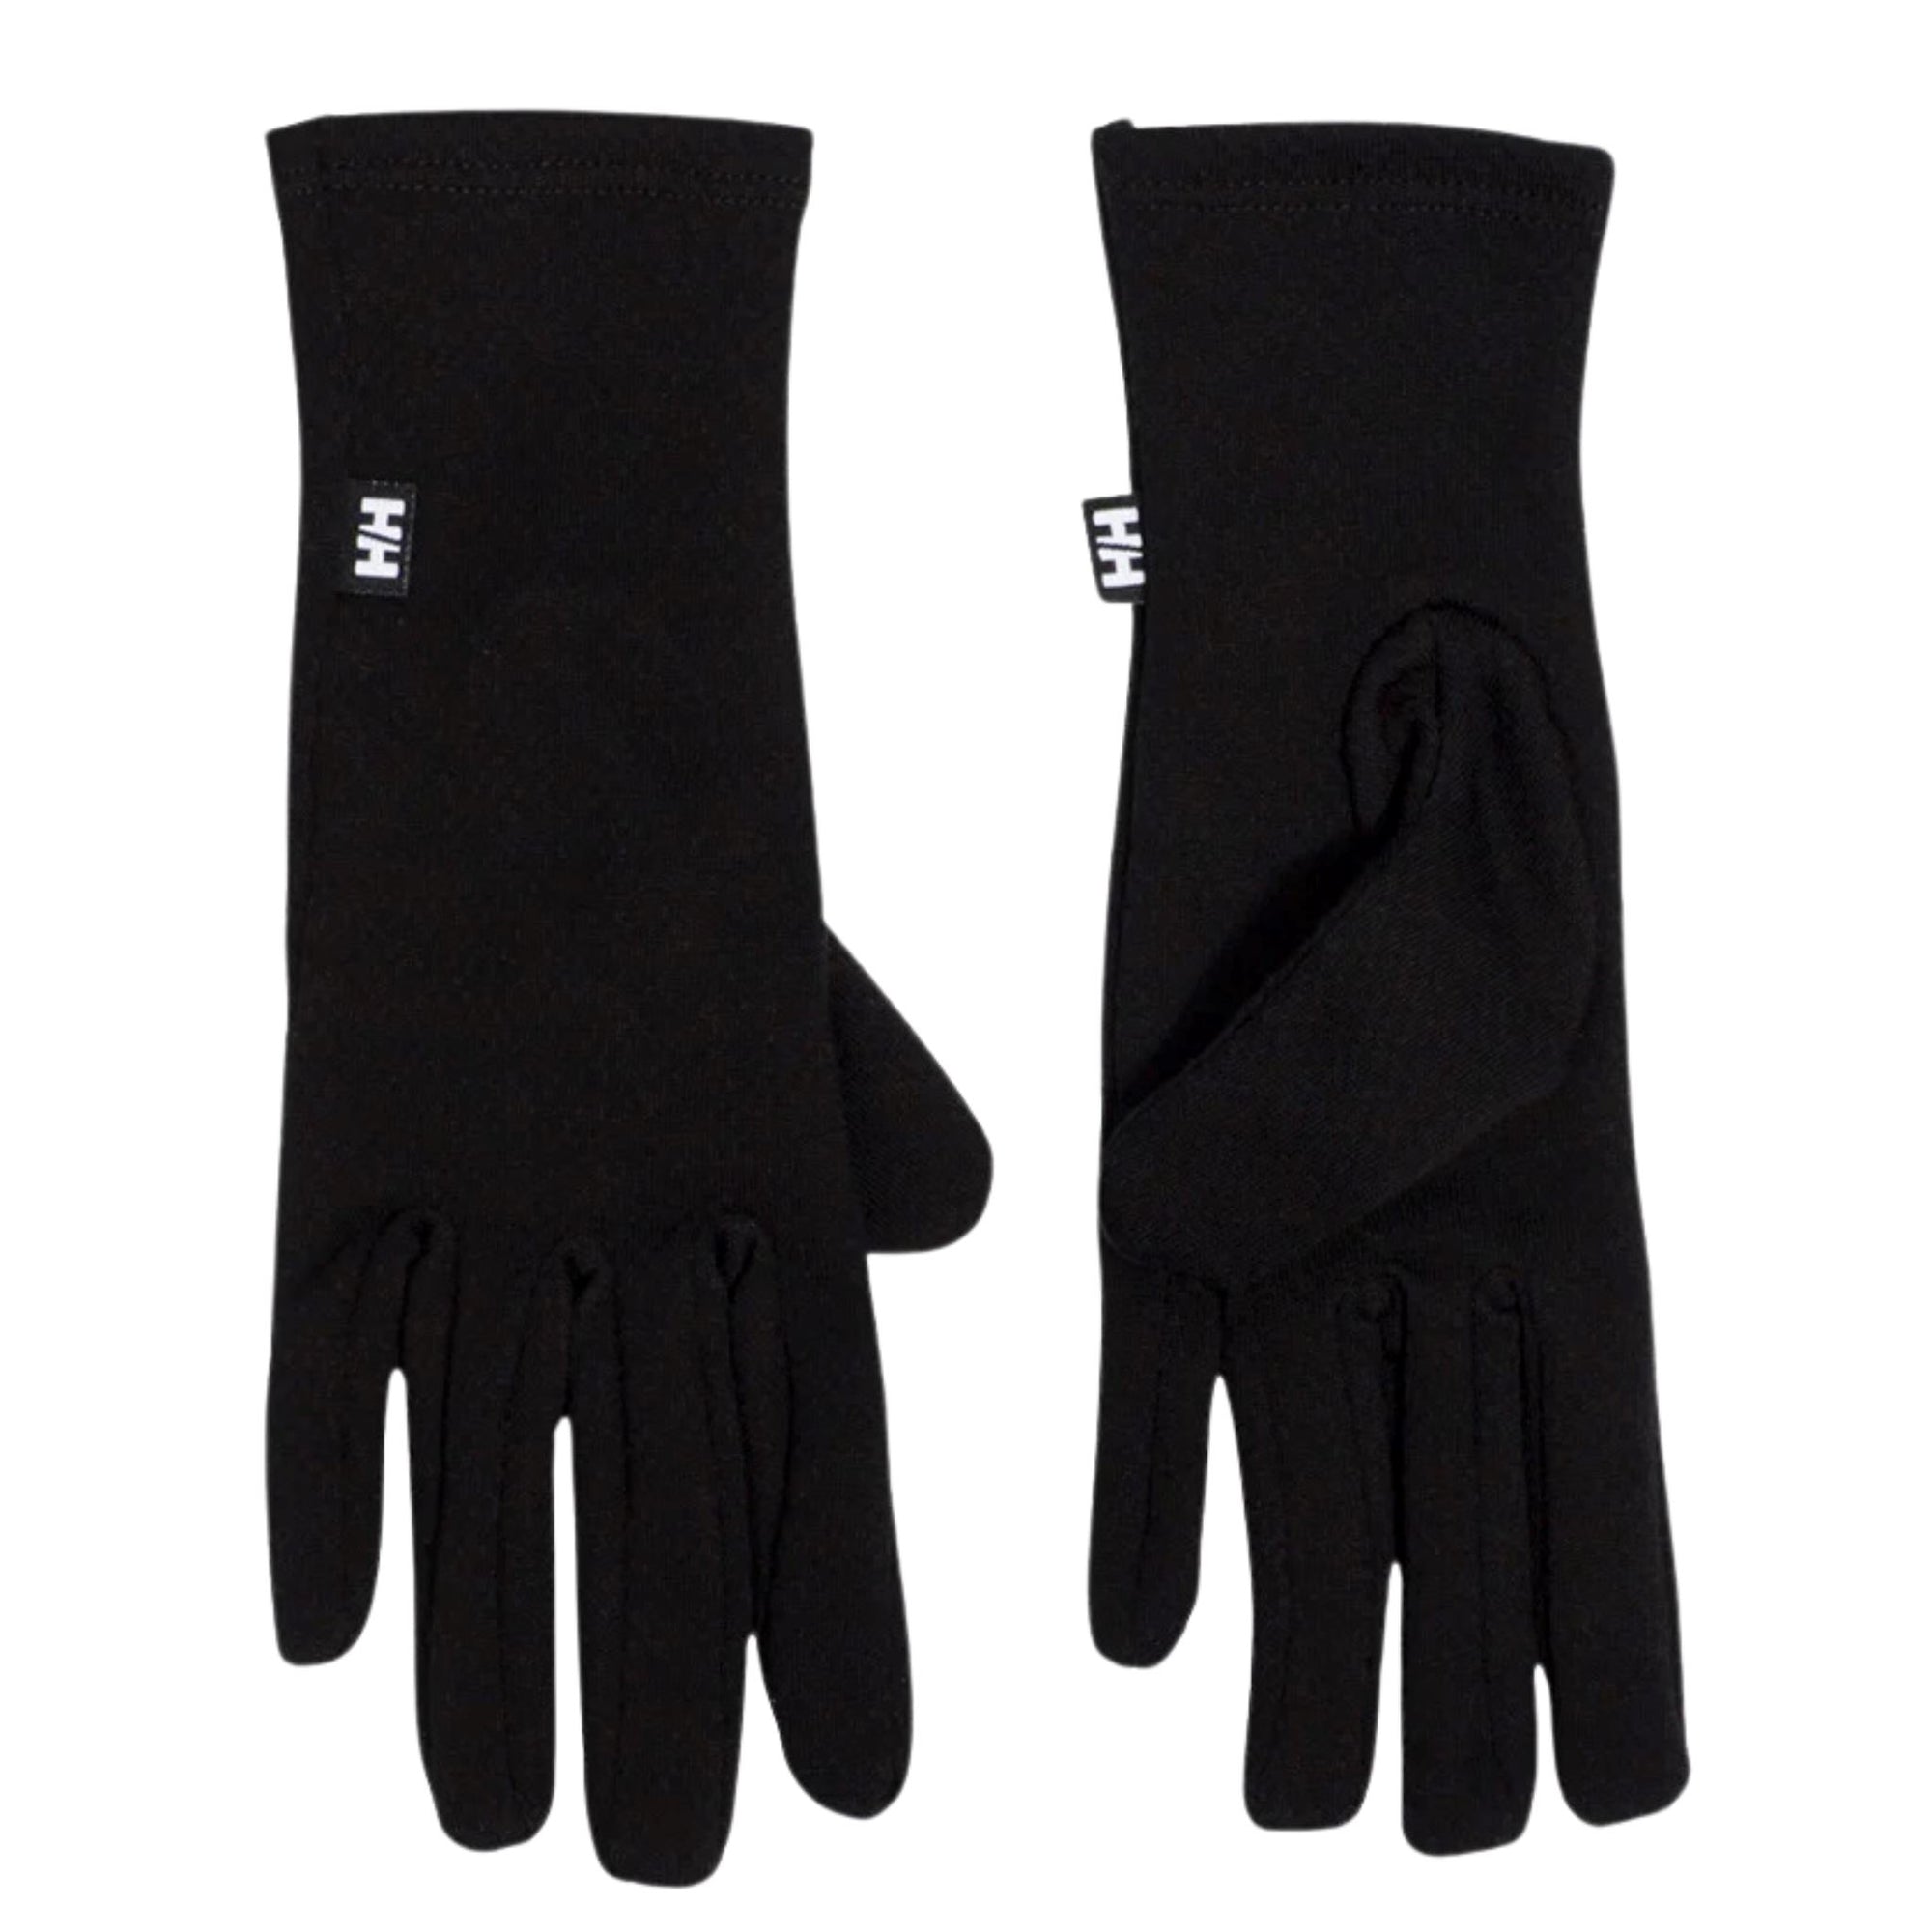 Helly Hansen Lifa Merino Glove Liners - Black Accessories Helly Hansen XS 